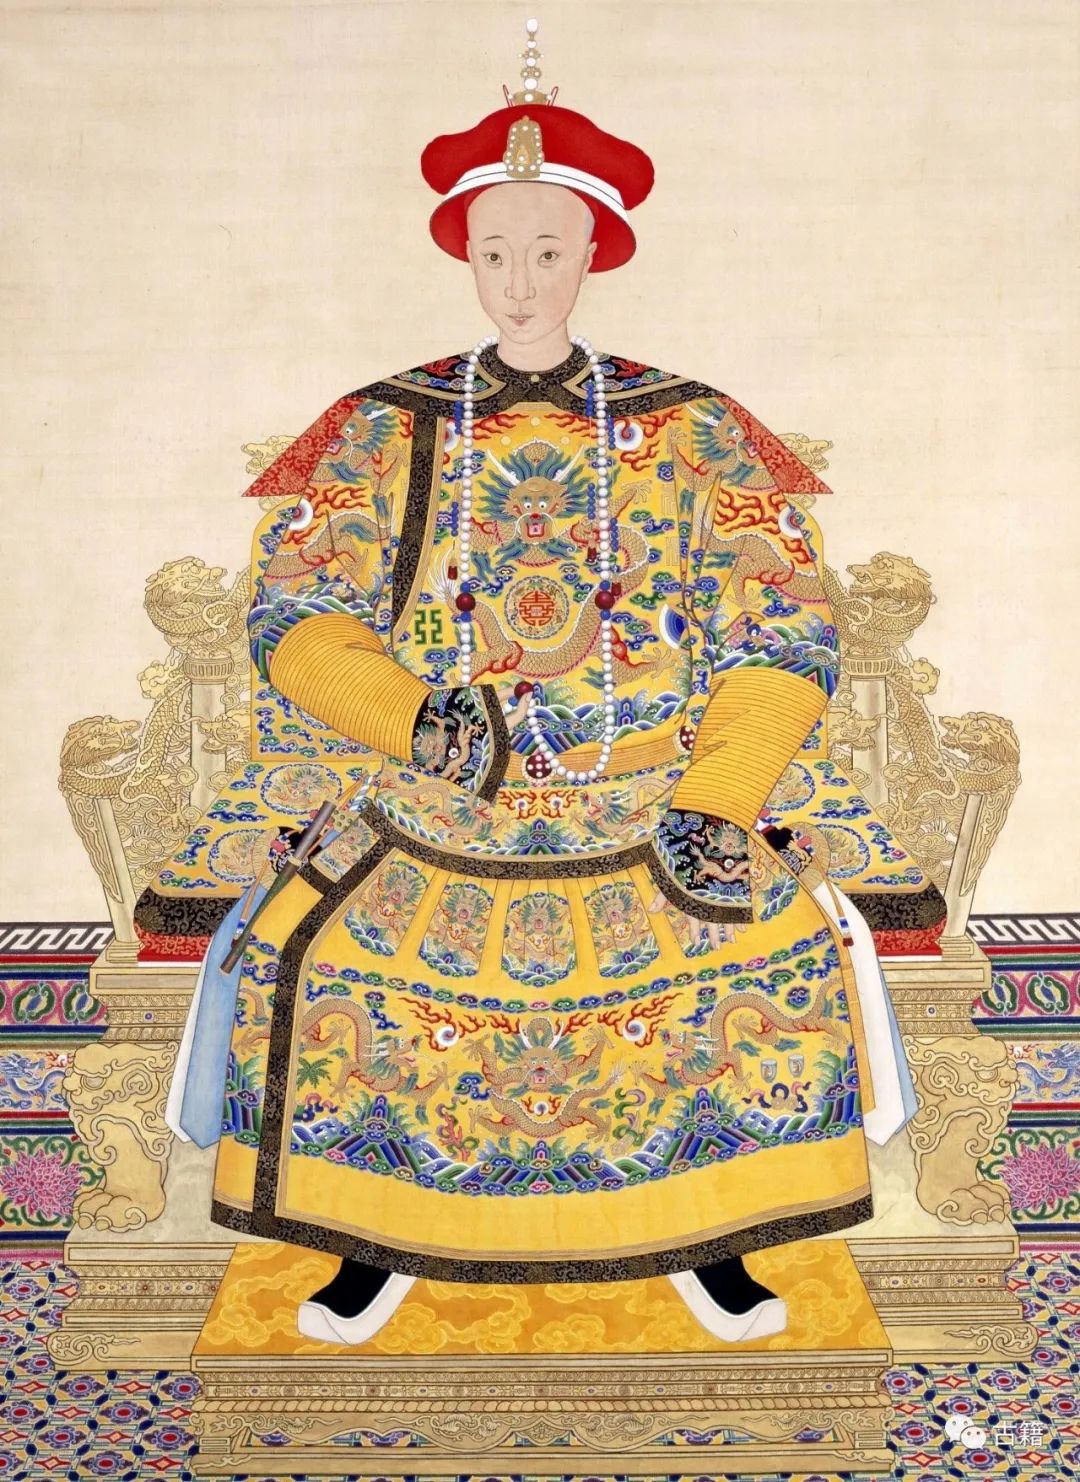 明,清朝历代皇帝画像乾隆帝《御笔平定台湾二十功臣像